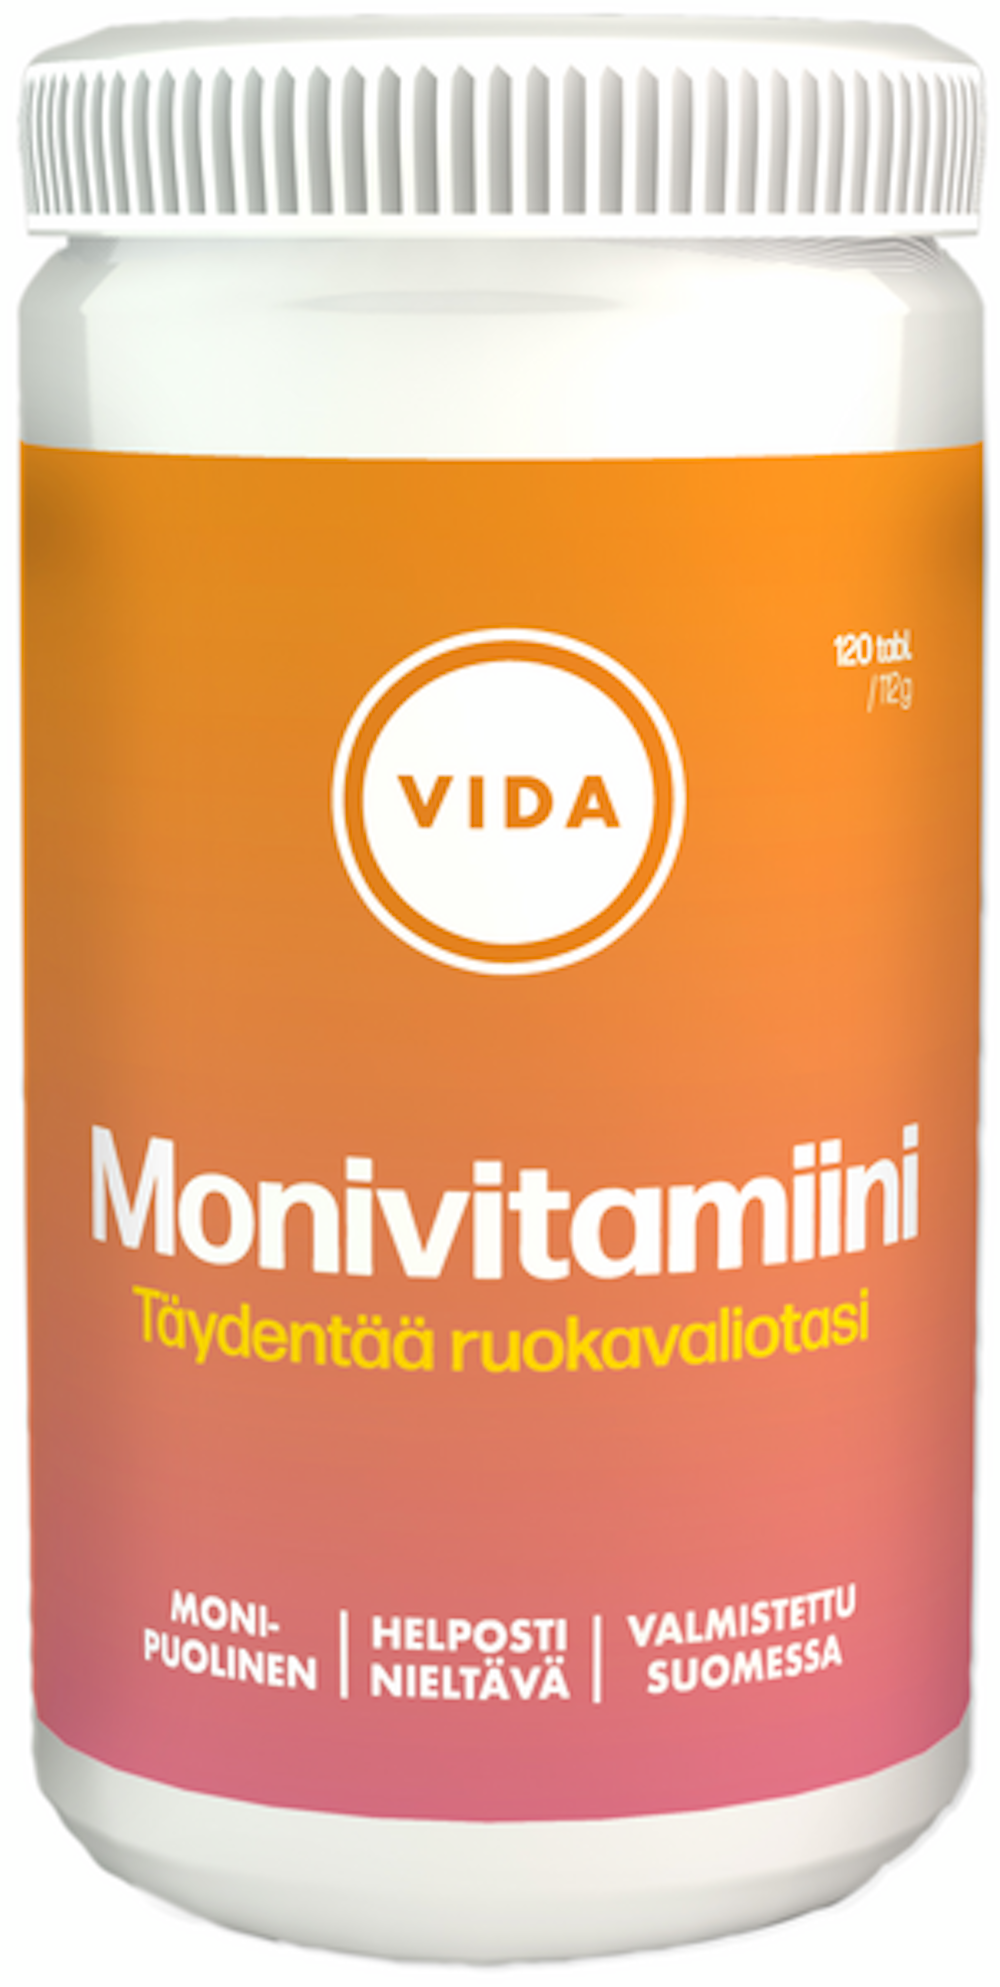 Vida Monivitamiini 120 tablettia 112g Ravintolisävalmiste — HoReCa-tukku  Kespro